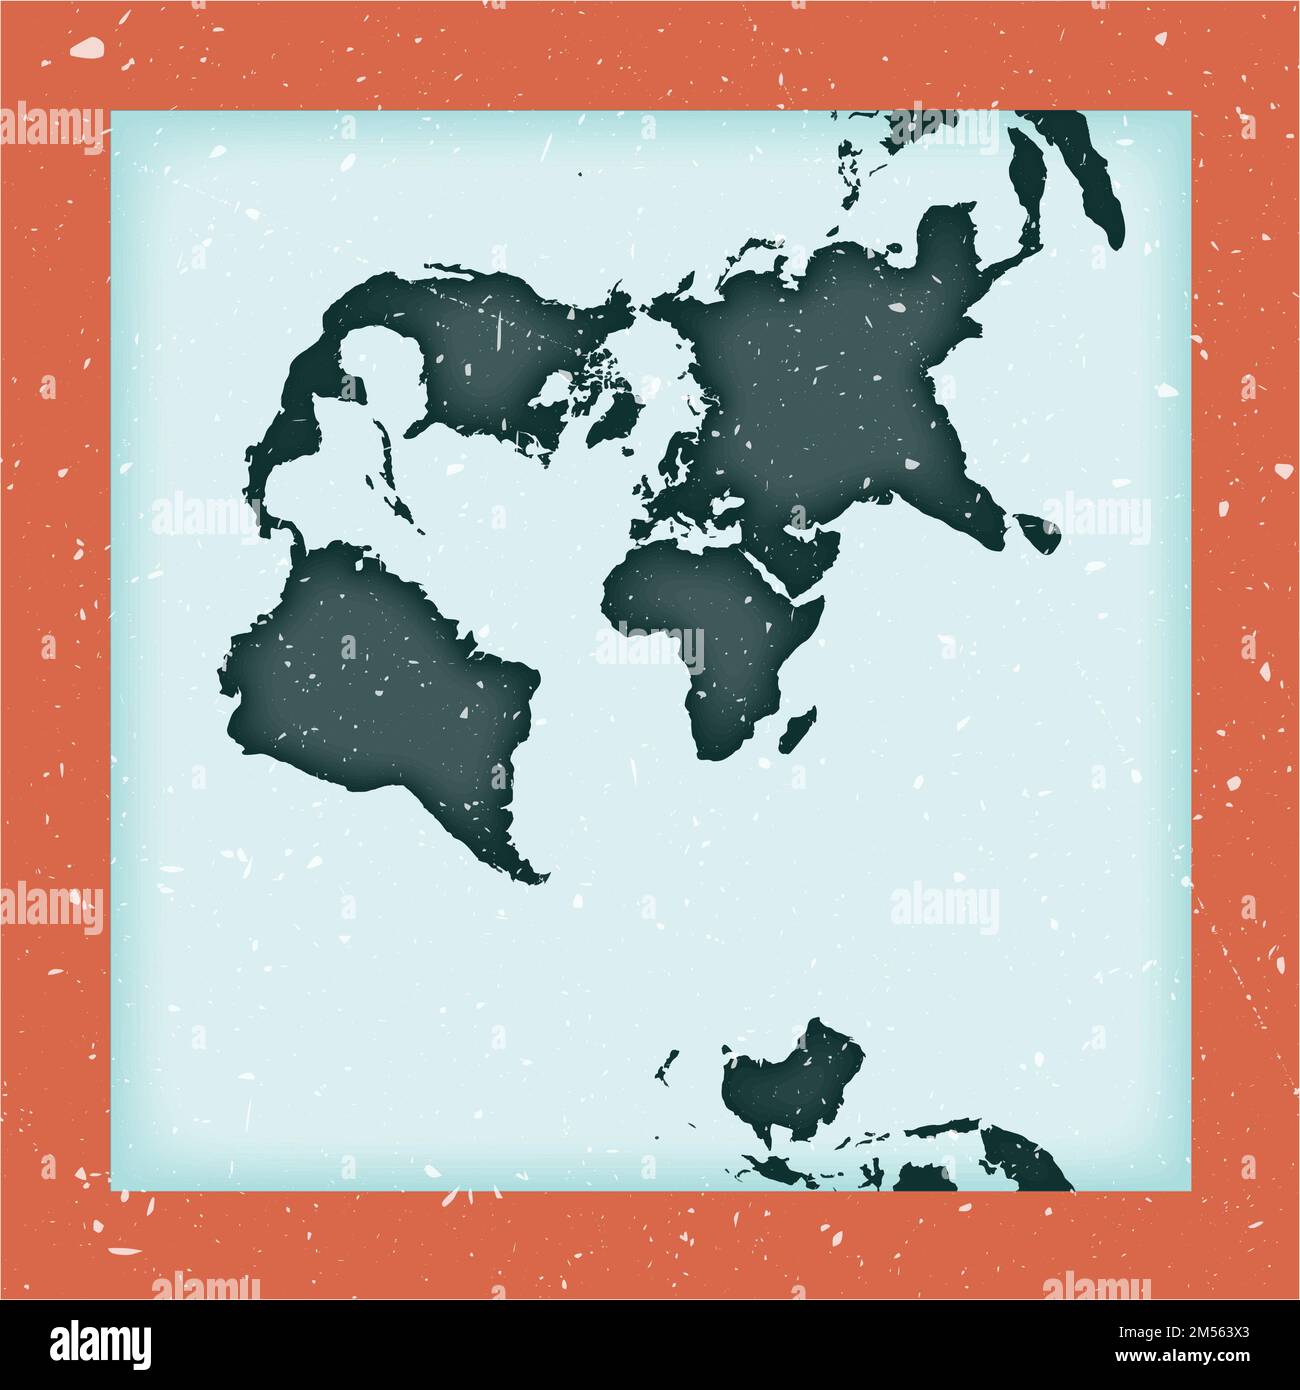 Weltkarten-Poster. Transversale sphärische Mercatorprojektion. Klassische Weltform mit Grunge-Struktur. Künstlerische Vektordarstellung. Stock Vektor